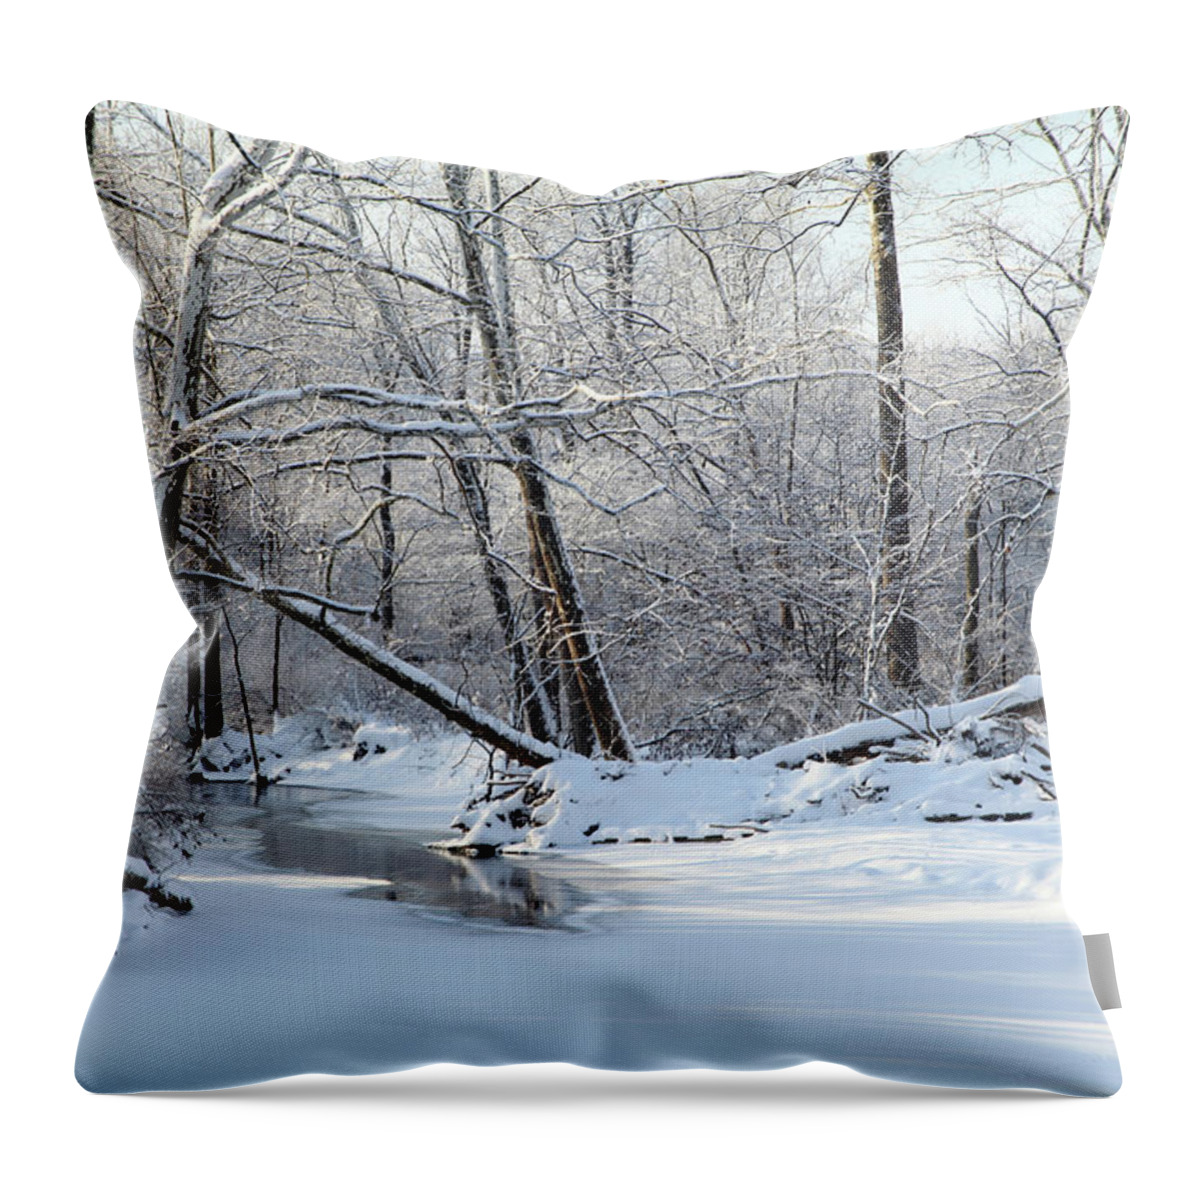 Snow Throw Pillow featuring the photograph Winter End by Robert Och